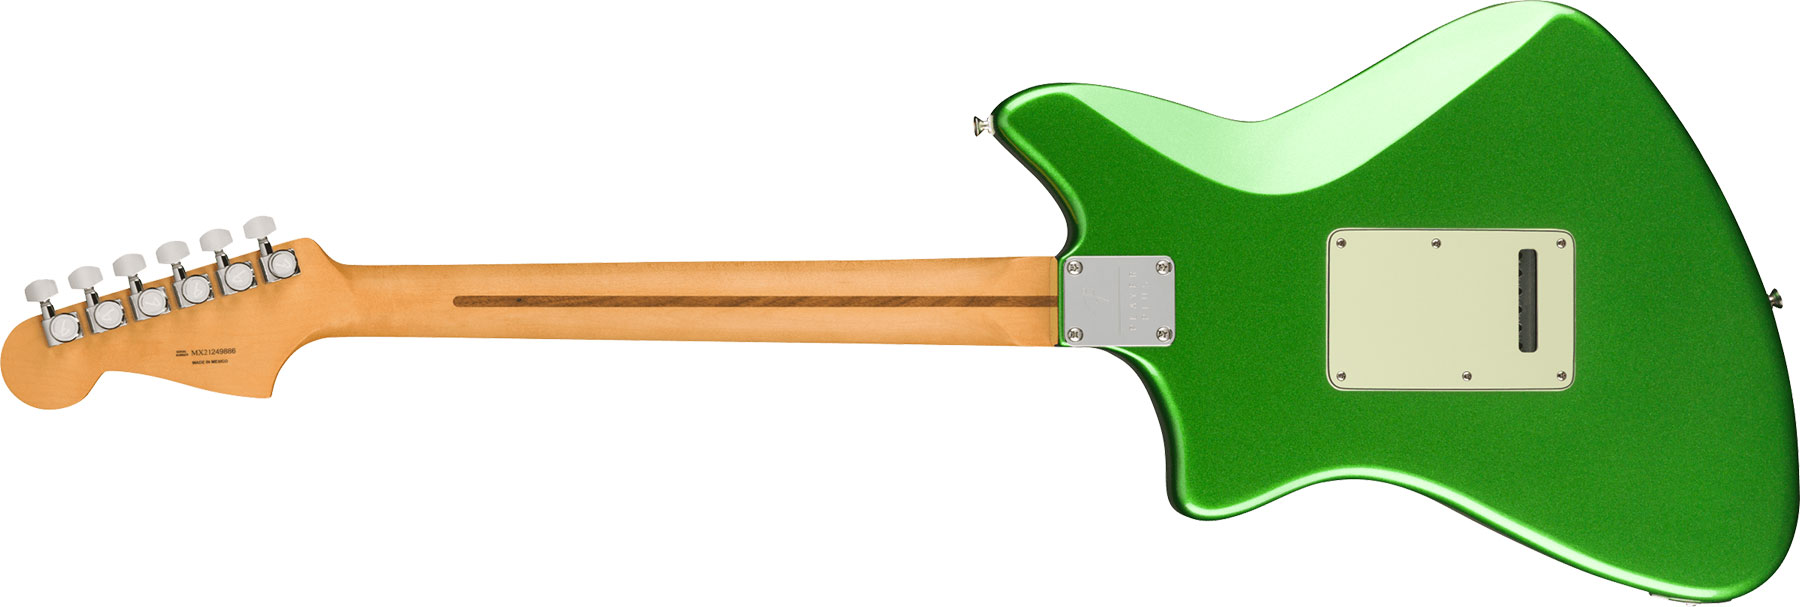 Fender Meteora Player Plus Hh Mex 2h Ht Pf - Cosmic Jade - Guitare Électrique RÉtro Rock - Variation 1